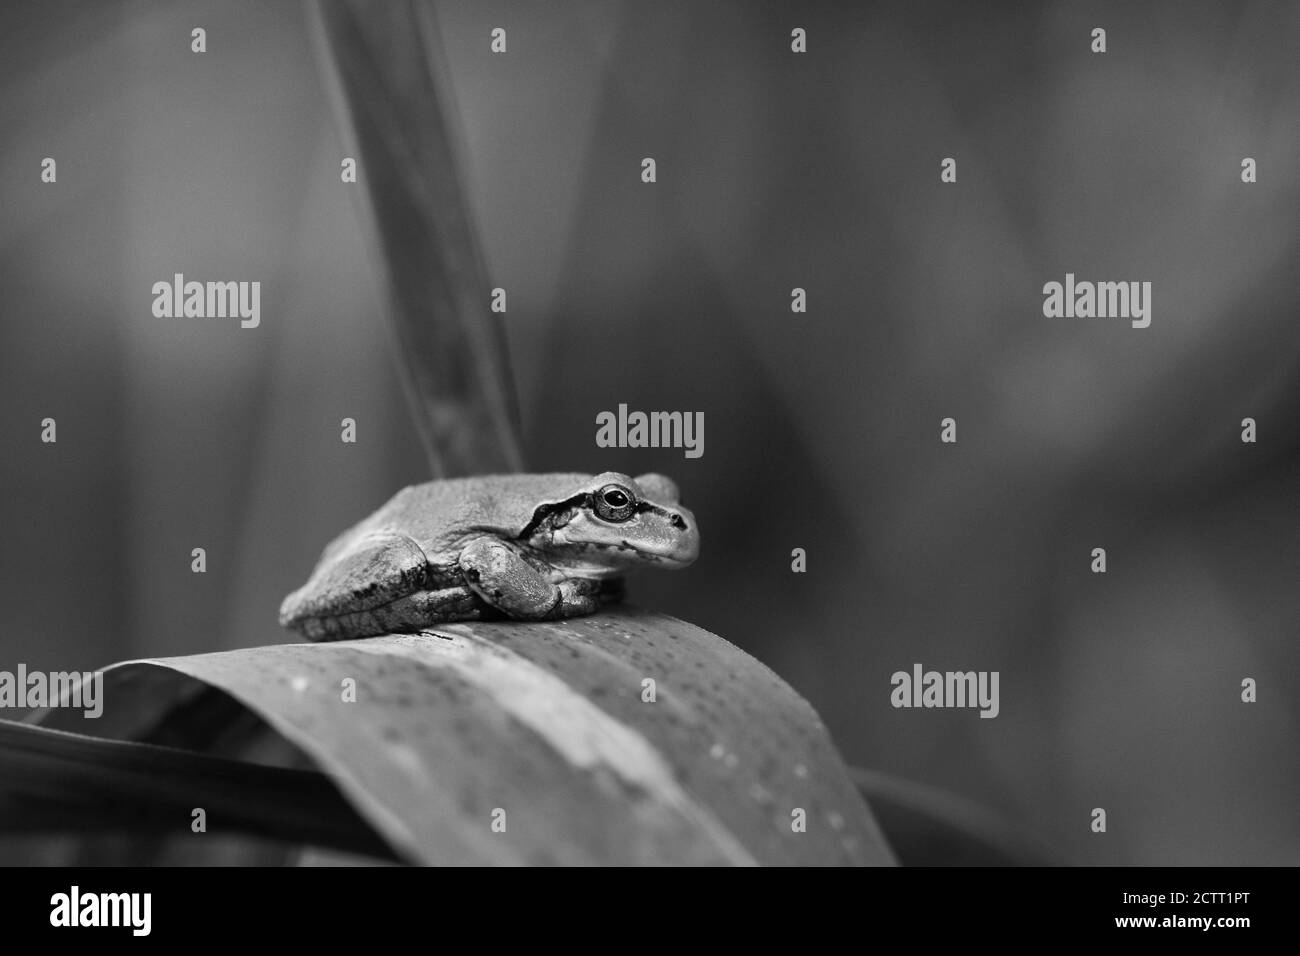 Une grenouille japonaise se trouve sur une feuille de roseau Banque D'Images